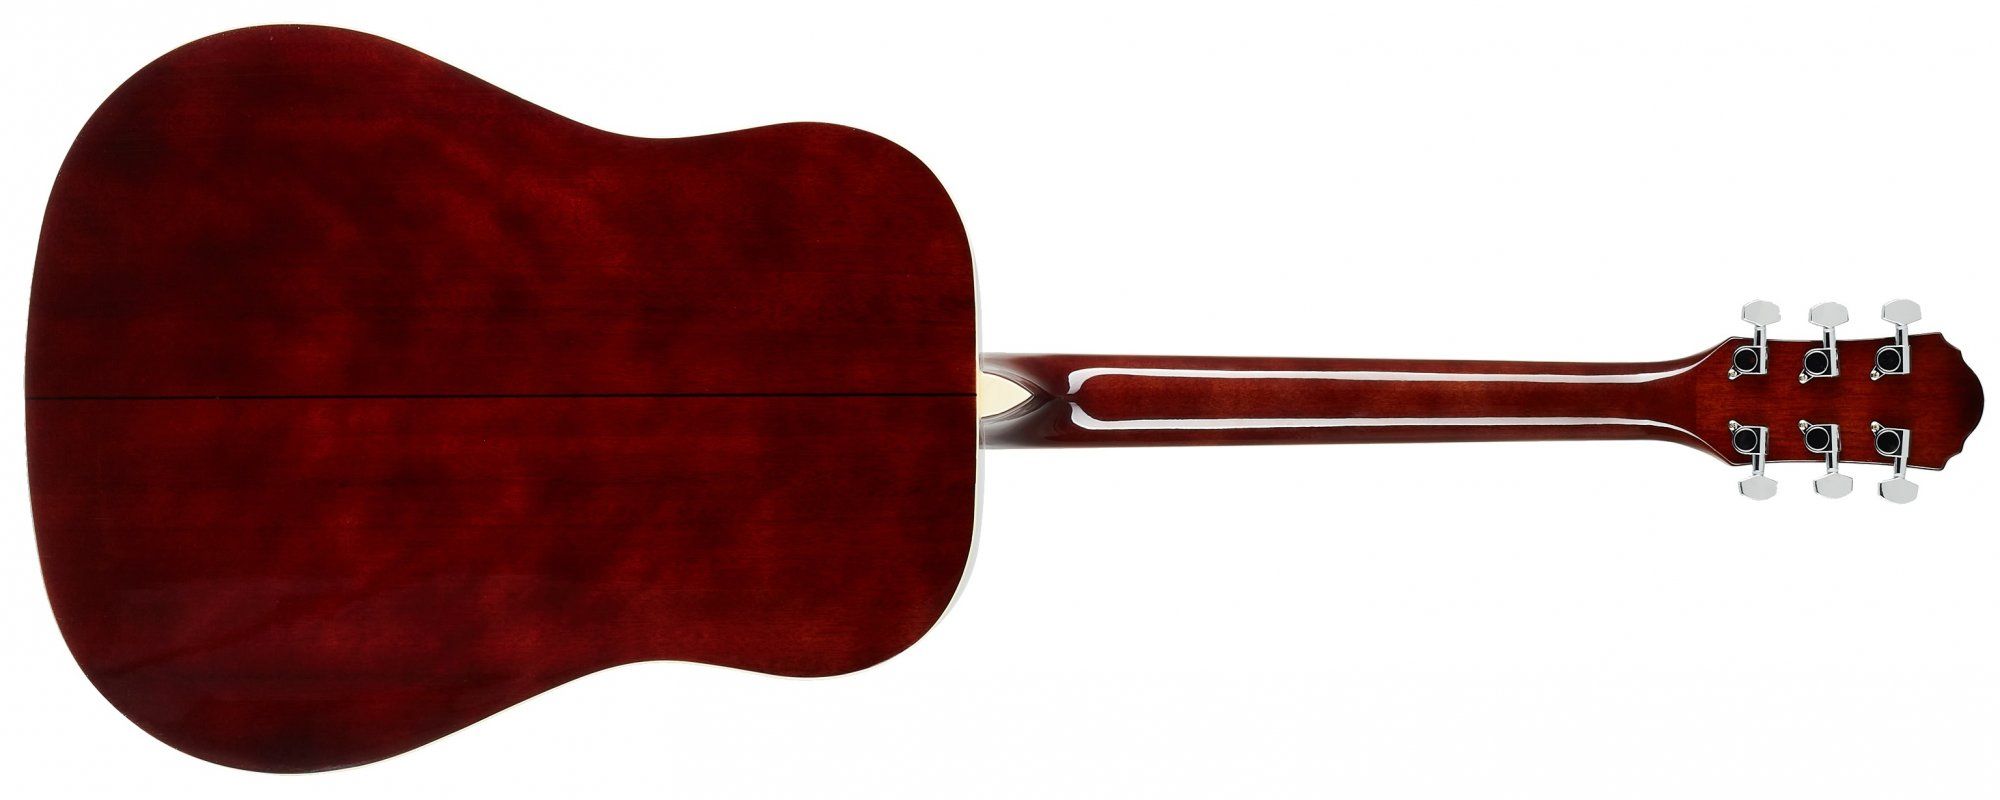  oscar schmidt gyönyörű akusztikus gitár 650 mm menzúra rétegelt test fényes felületkezelés alkalmas pengetővel és ujjal történő játszásra is 